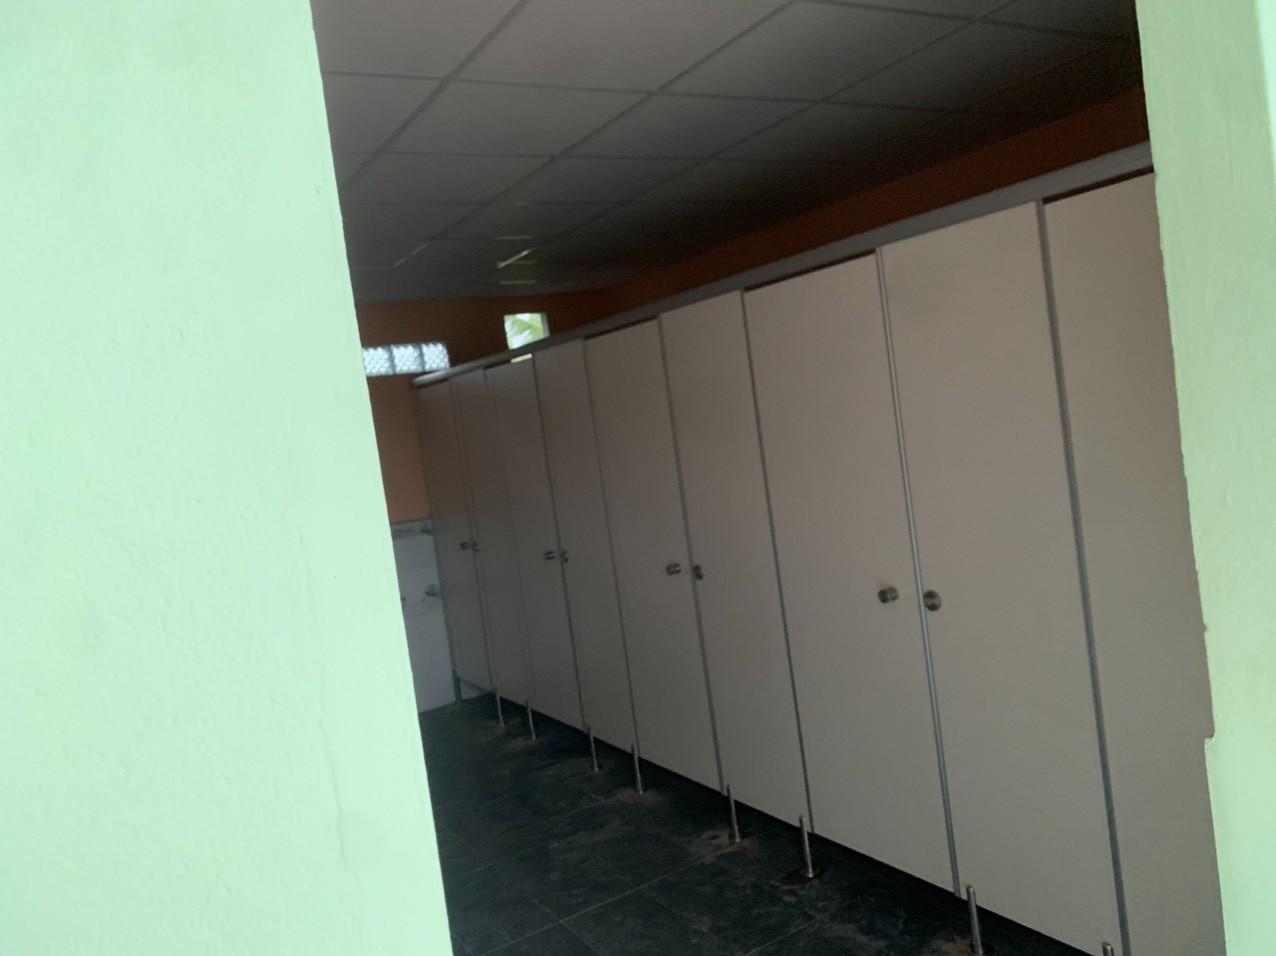 Dãy phòng WC mã màu 1004 được thi công lắp đặt tại Khu công nghiệp. Ảnh: Dương Thi Công